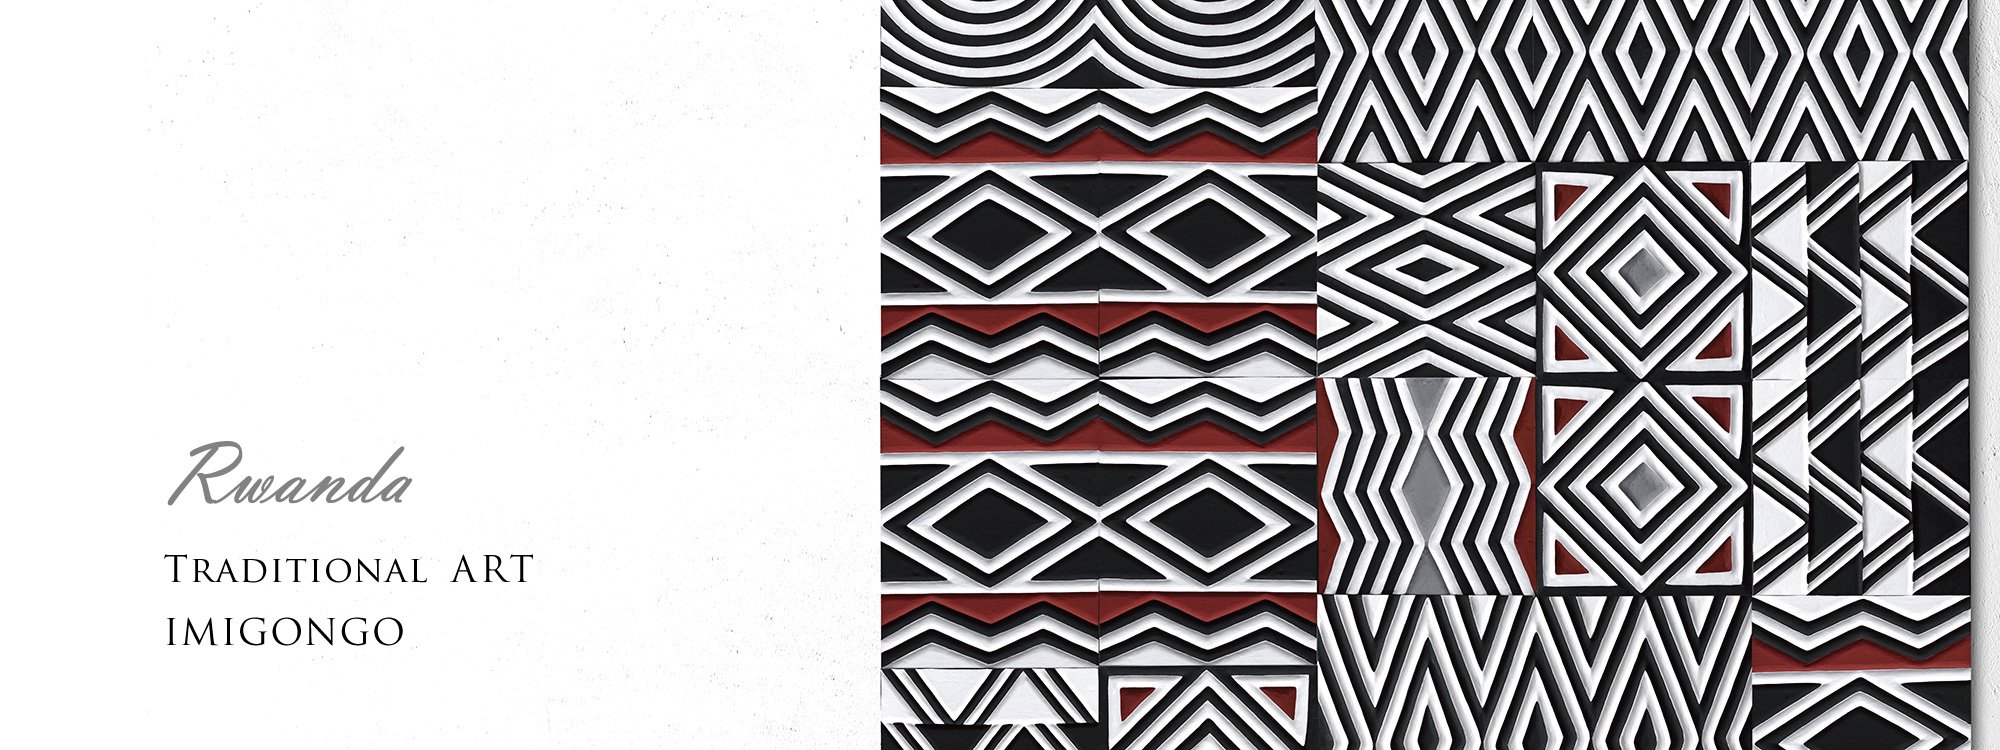 アフリカとつくるルワンダ伝統工芸アート「イミゴンゴ」Ruise B「ルイズビィ」